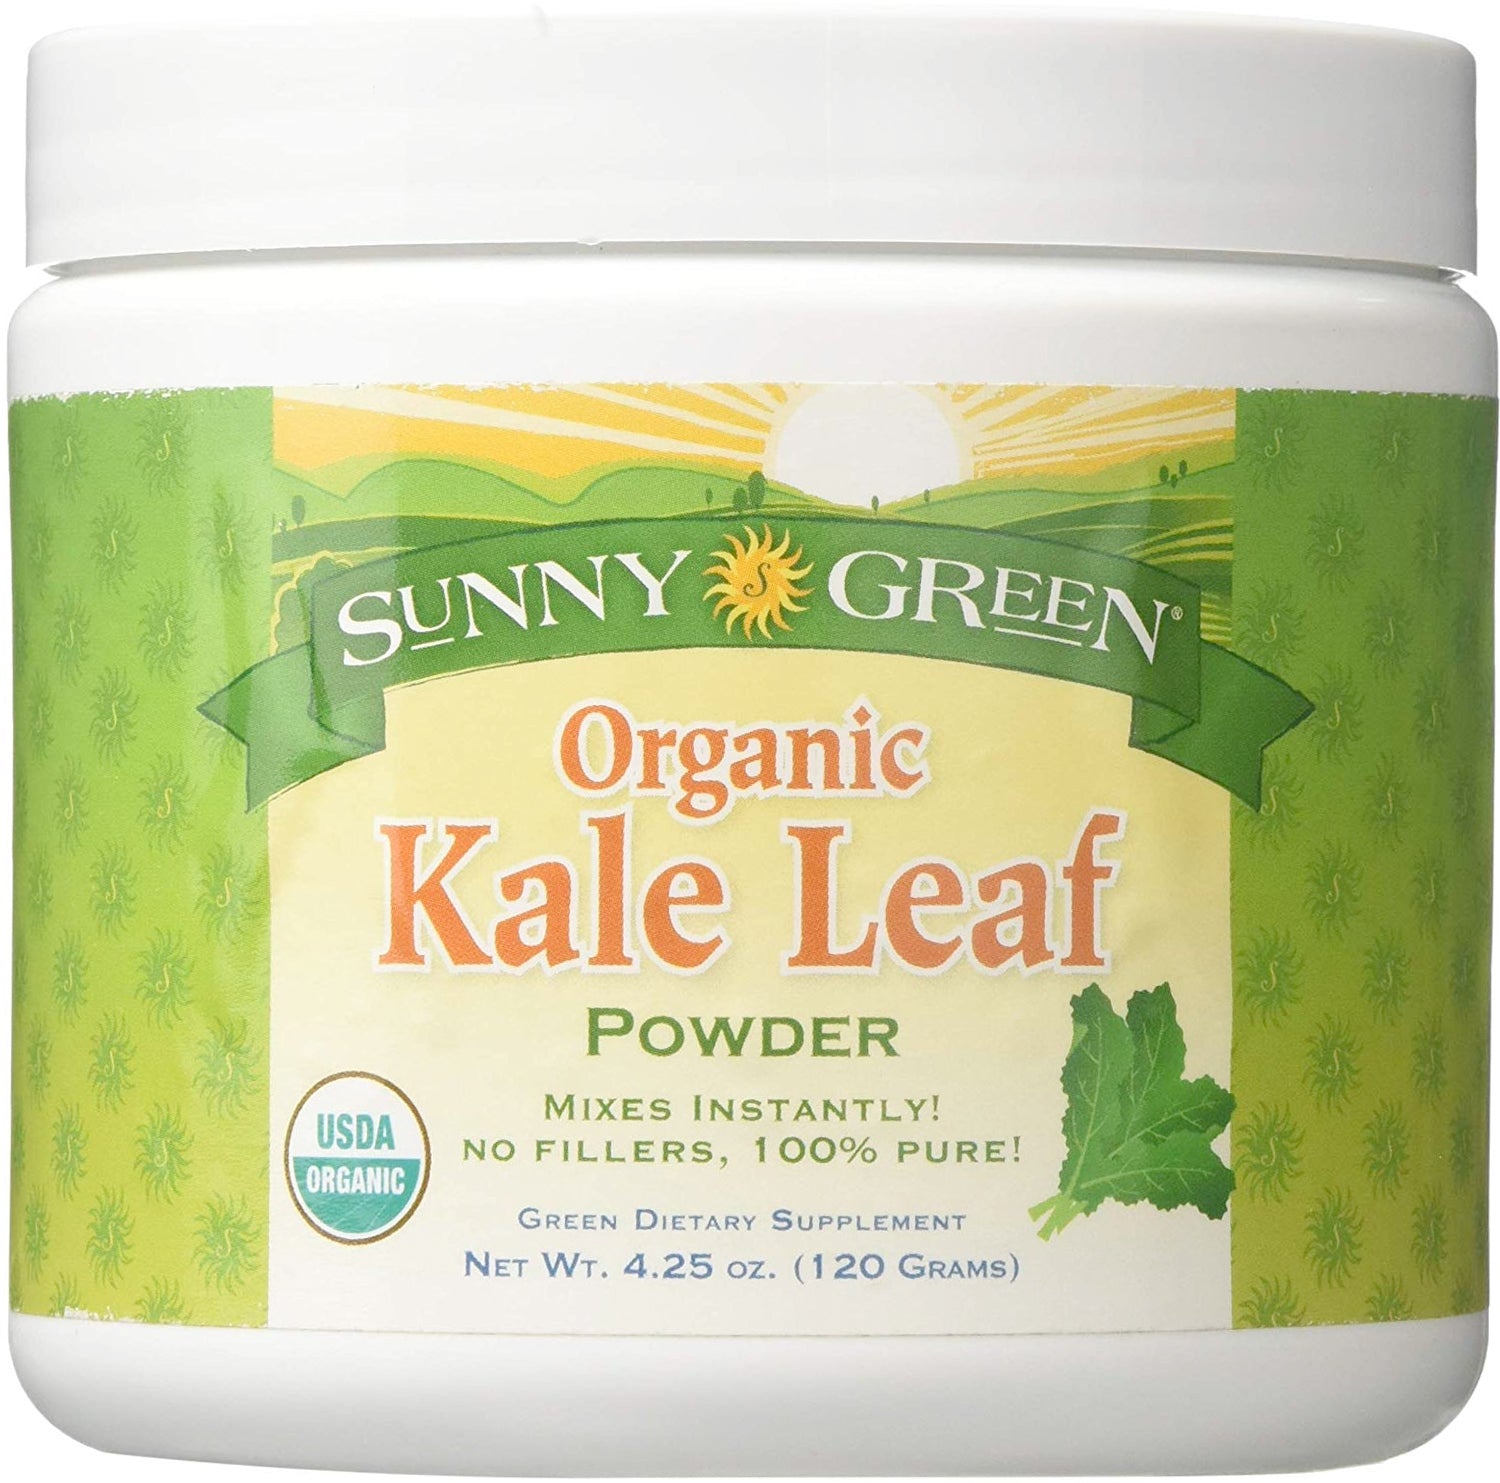 Organic Kale Leaf Powder, 4.25 Oz (120 g) Powder